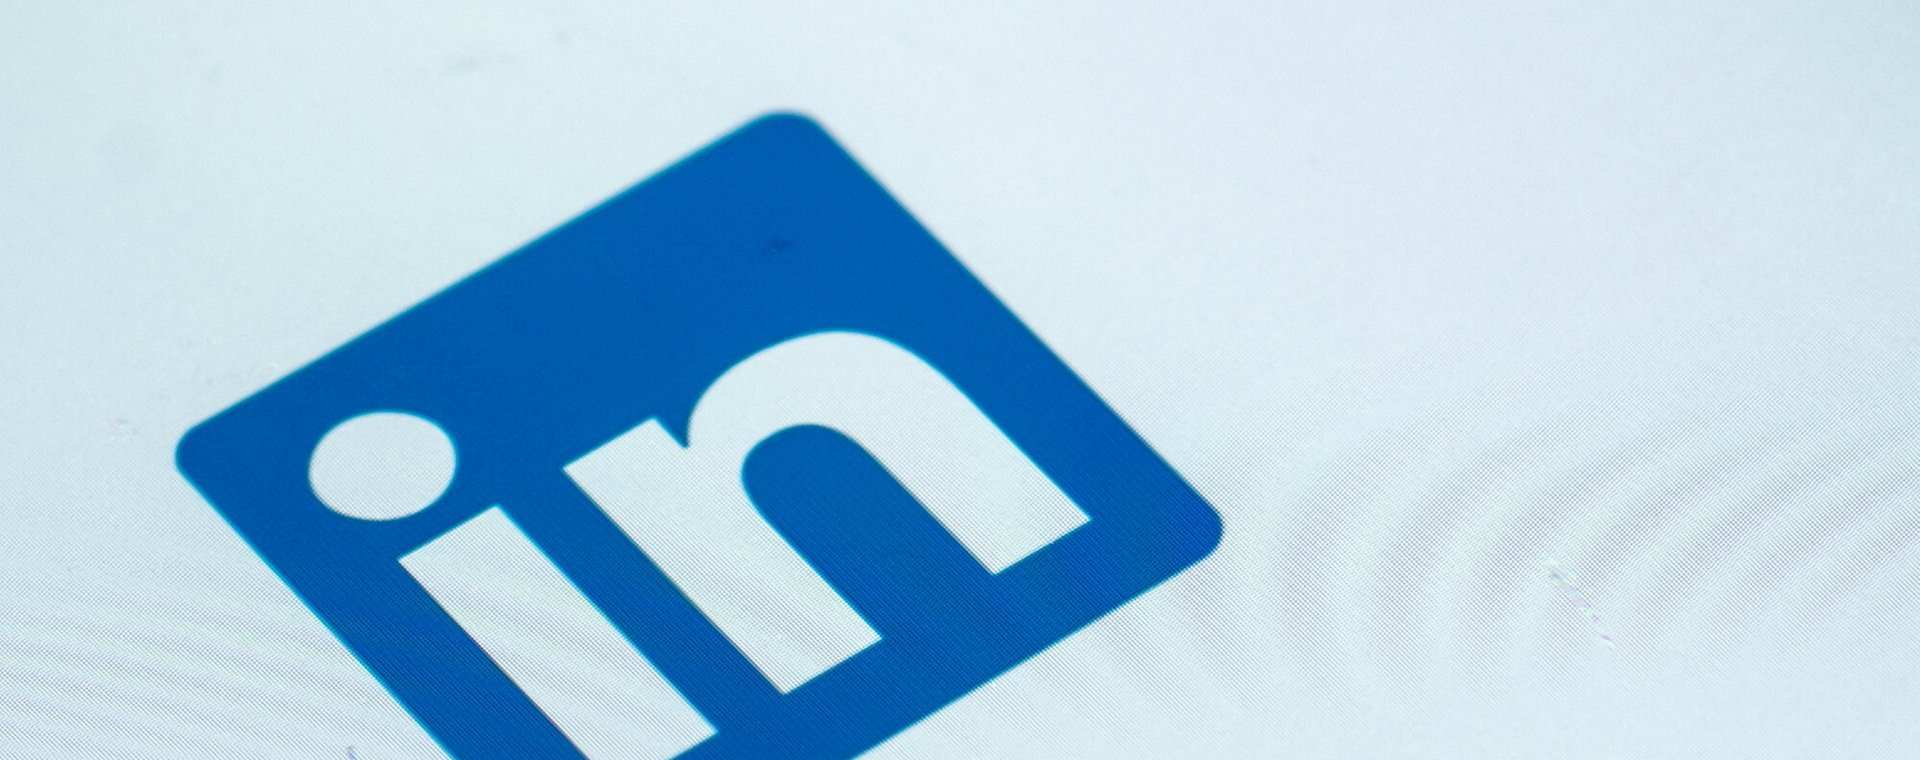 Rekruterzy radzą osobom szukającym pracowników na LinkedIn, by zamieszczały krótkie treści, koncentrowały się na umiejętnościach i dołączały do grup.